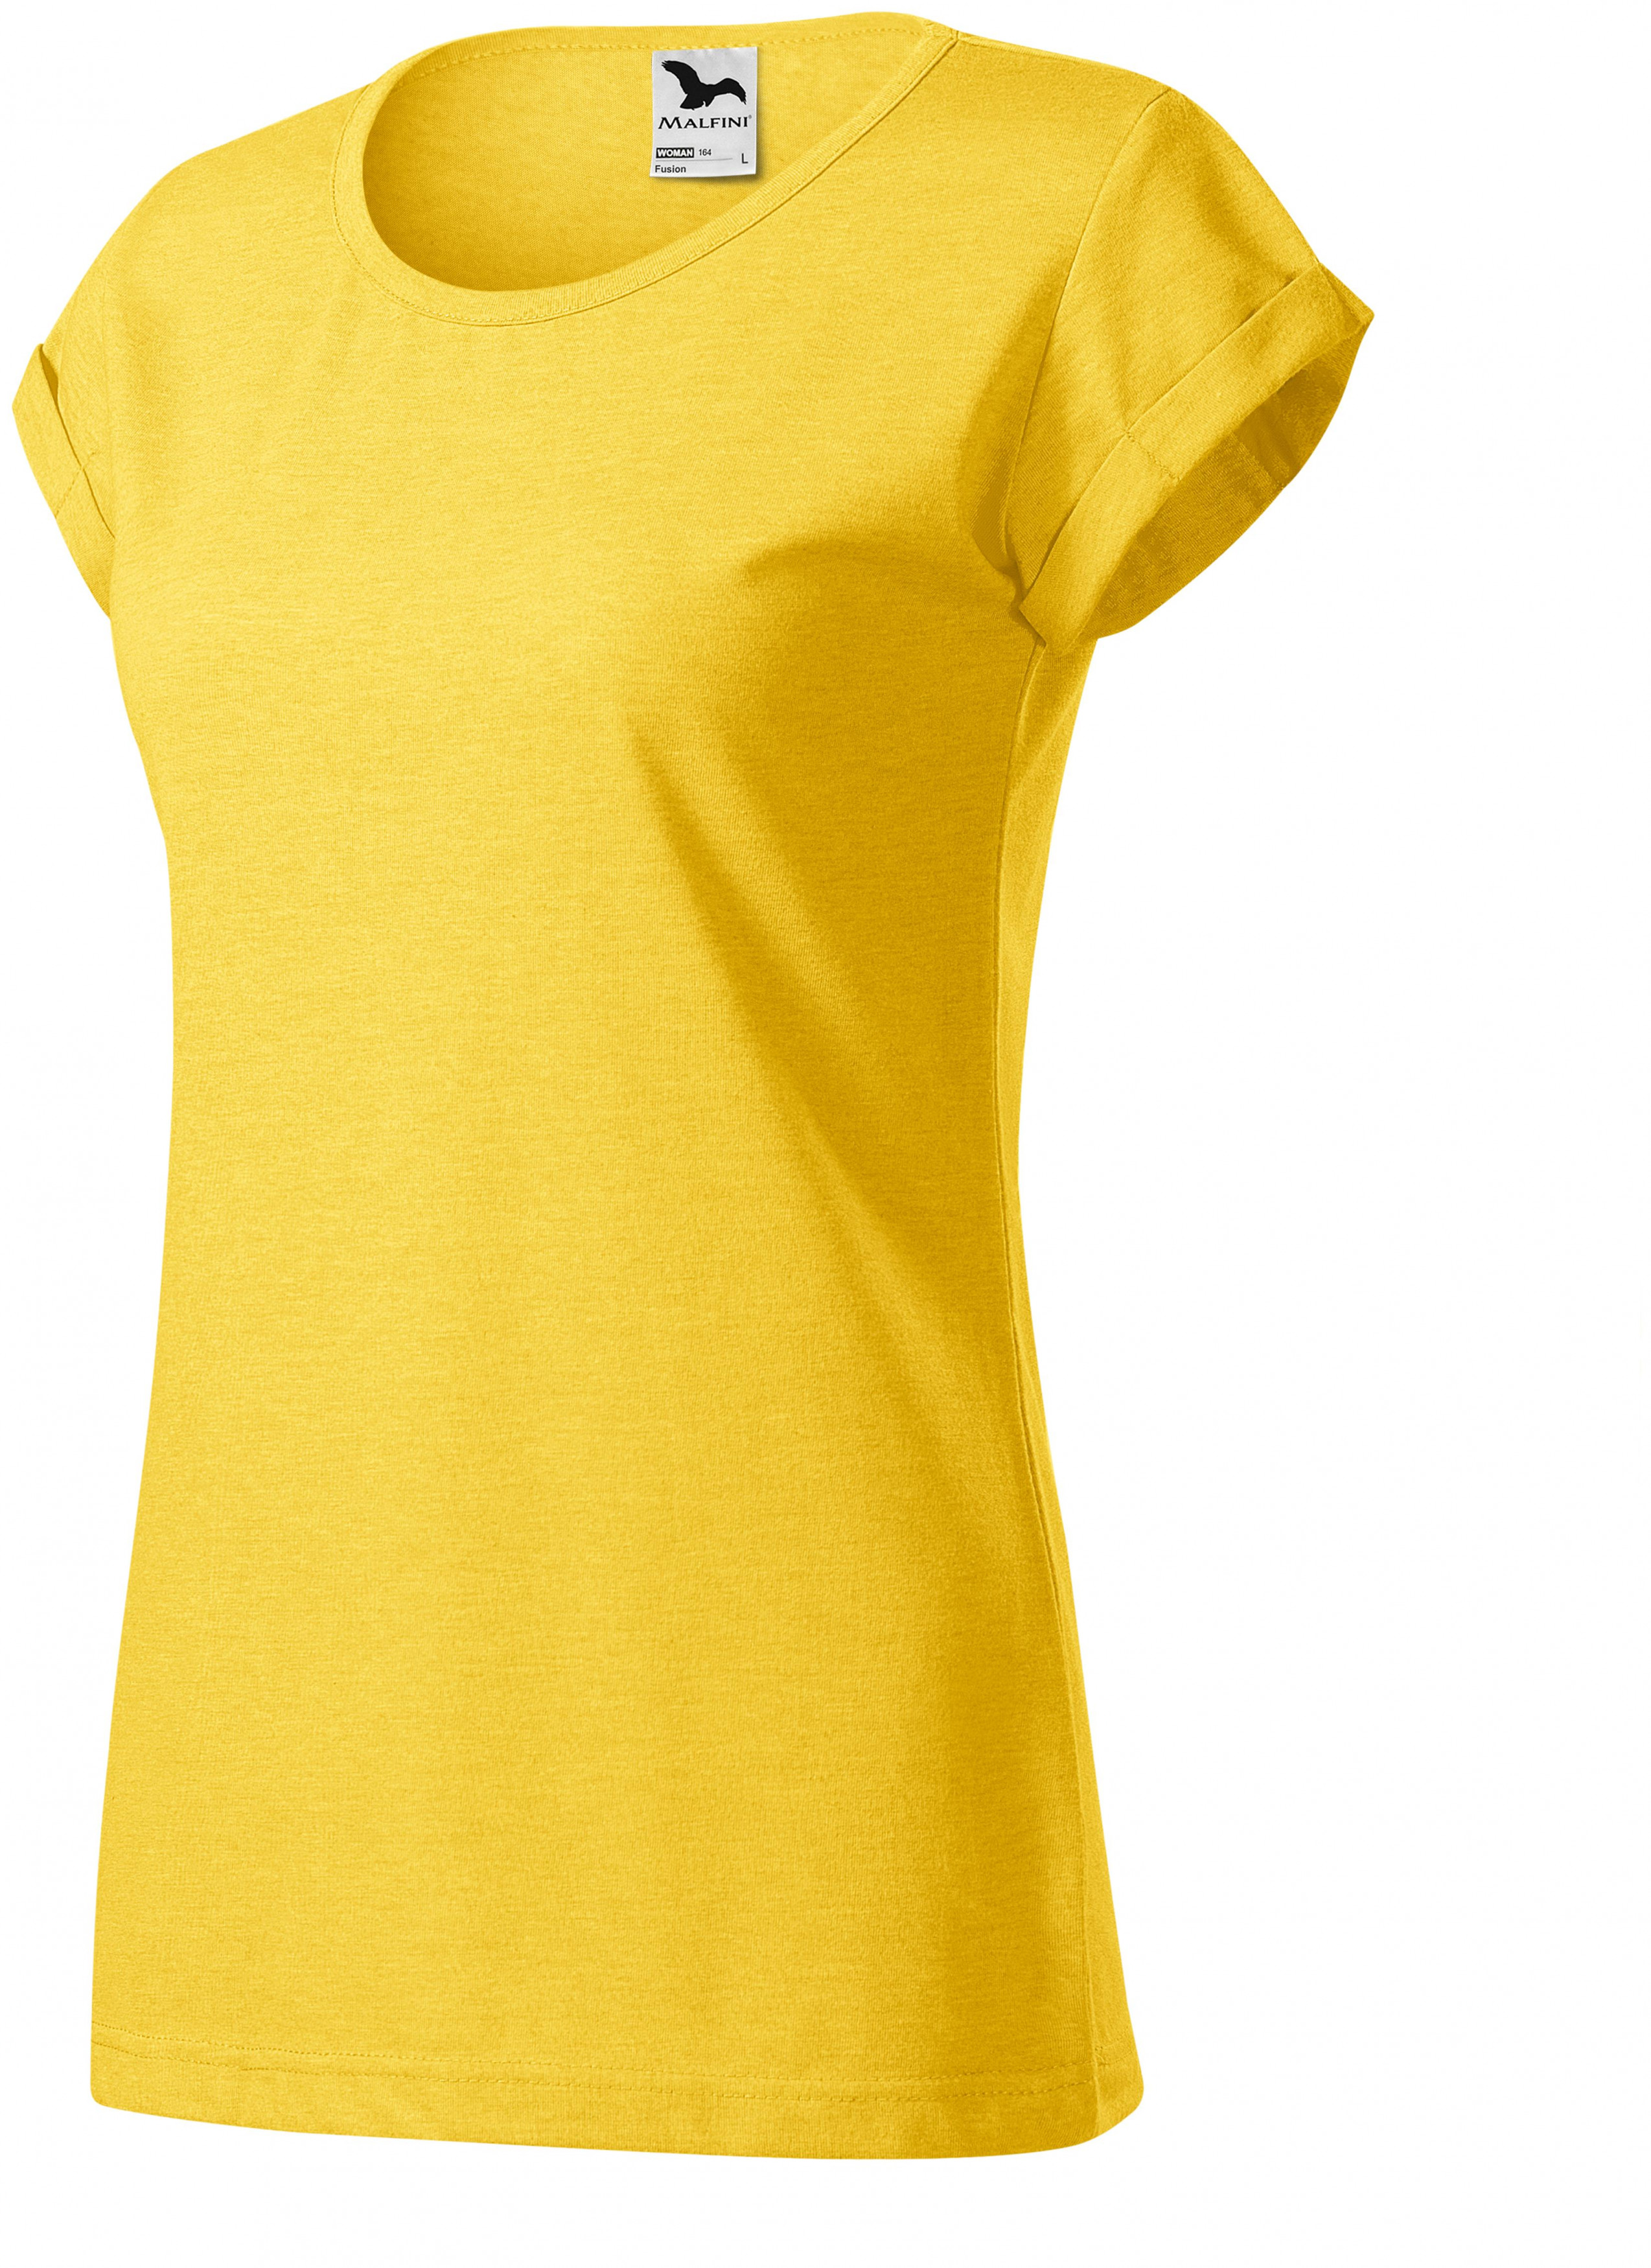 Dámske tričko s vyhrnutými rukávmi, žltý melír, XS